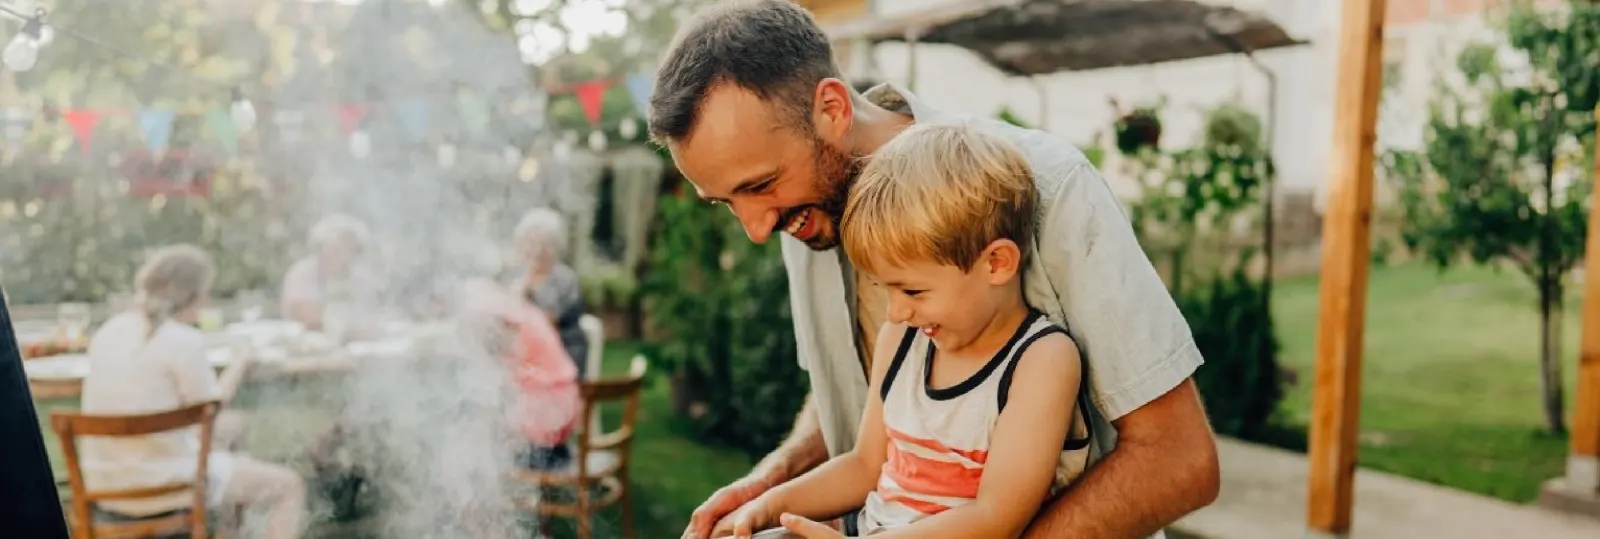 Ideen für ein schönes Vater-Sohn-Erlebnis am Vatertag